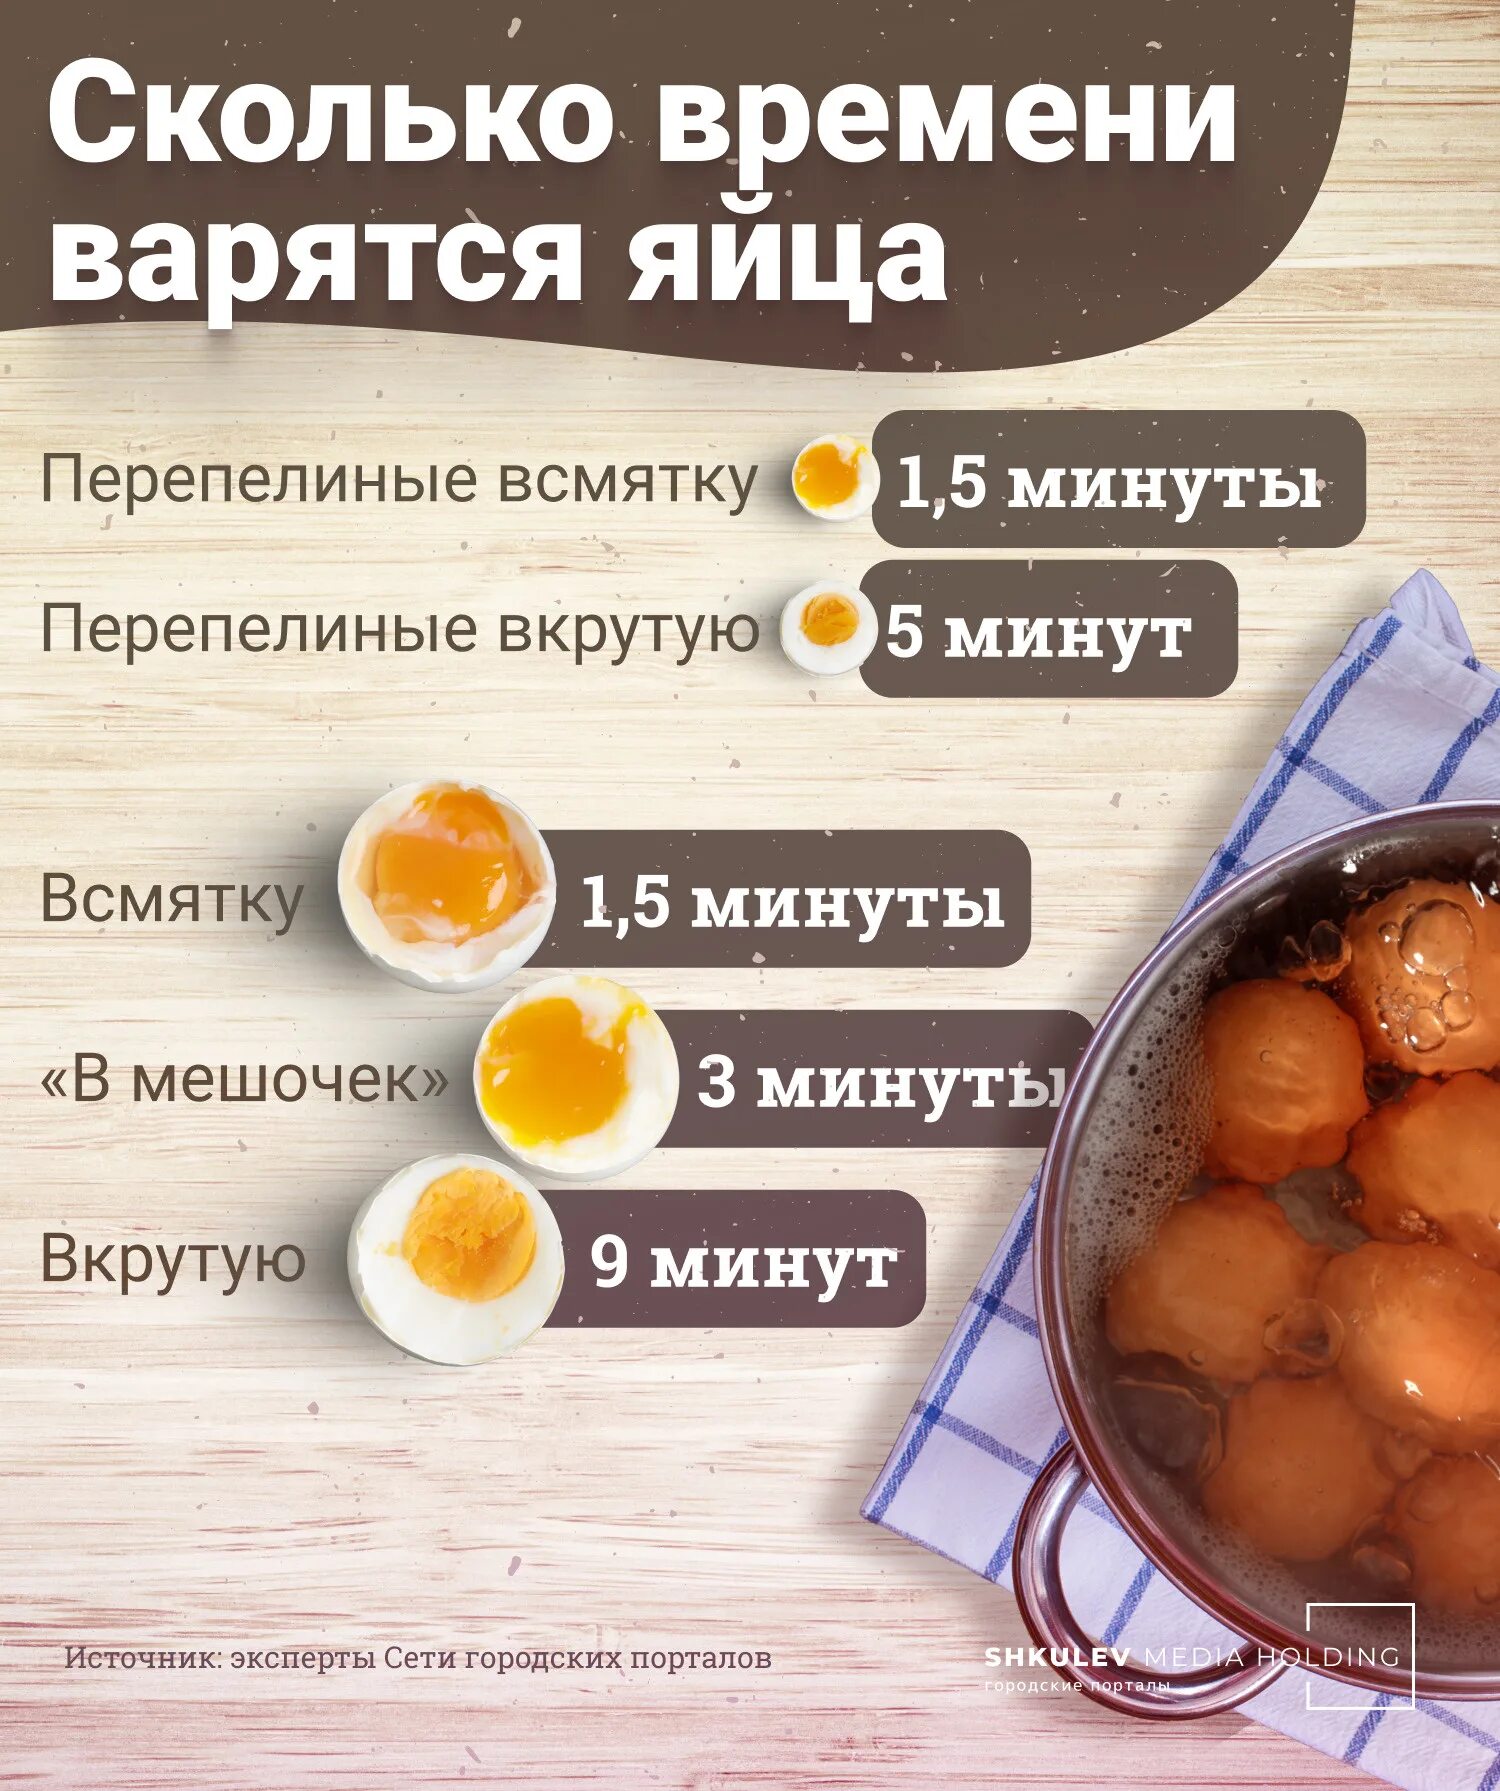 Яйцо всмятку сколько варить в холодной воде. Сколько варить яйца. Сколько минут варятся яйца. Сколько минут варить яйца всмятку. Сколько ваоятся в Ятца.